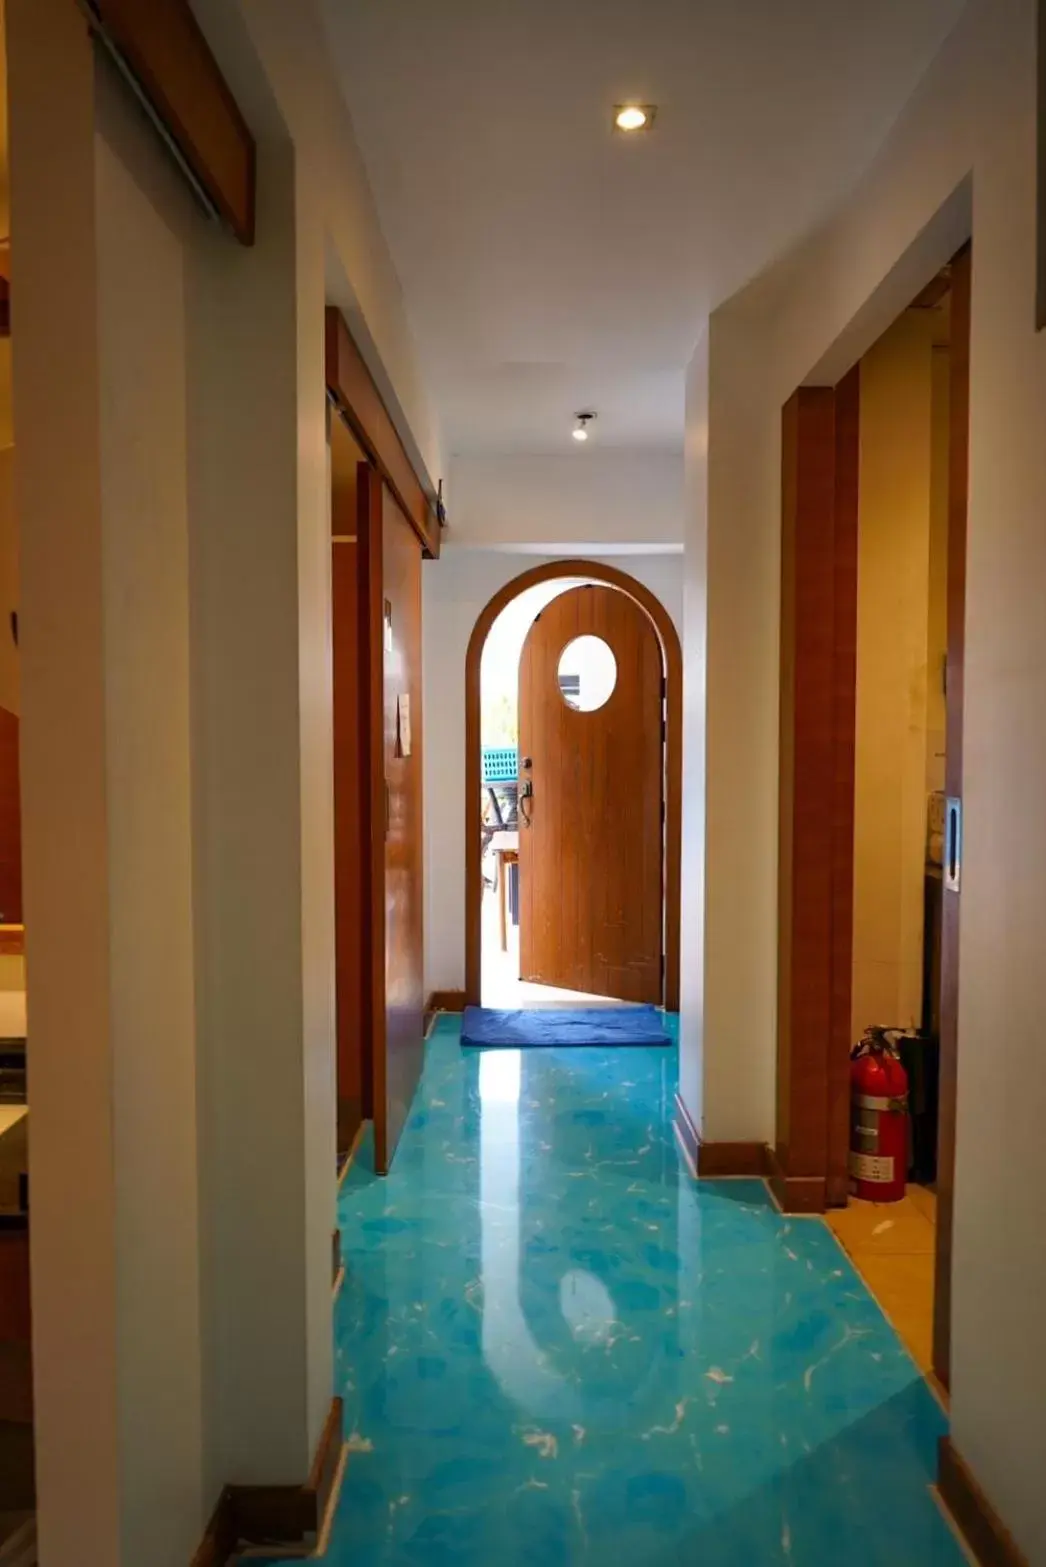 Swimming Pool in Hotel Mermaid Bangkok